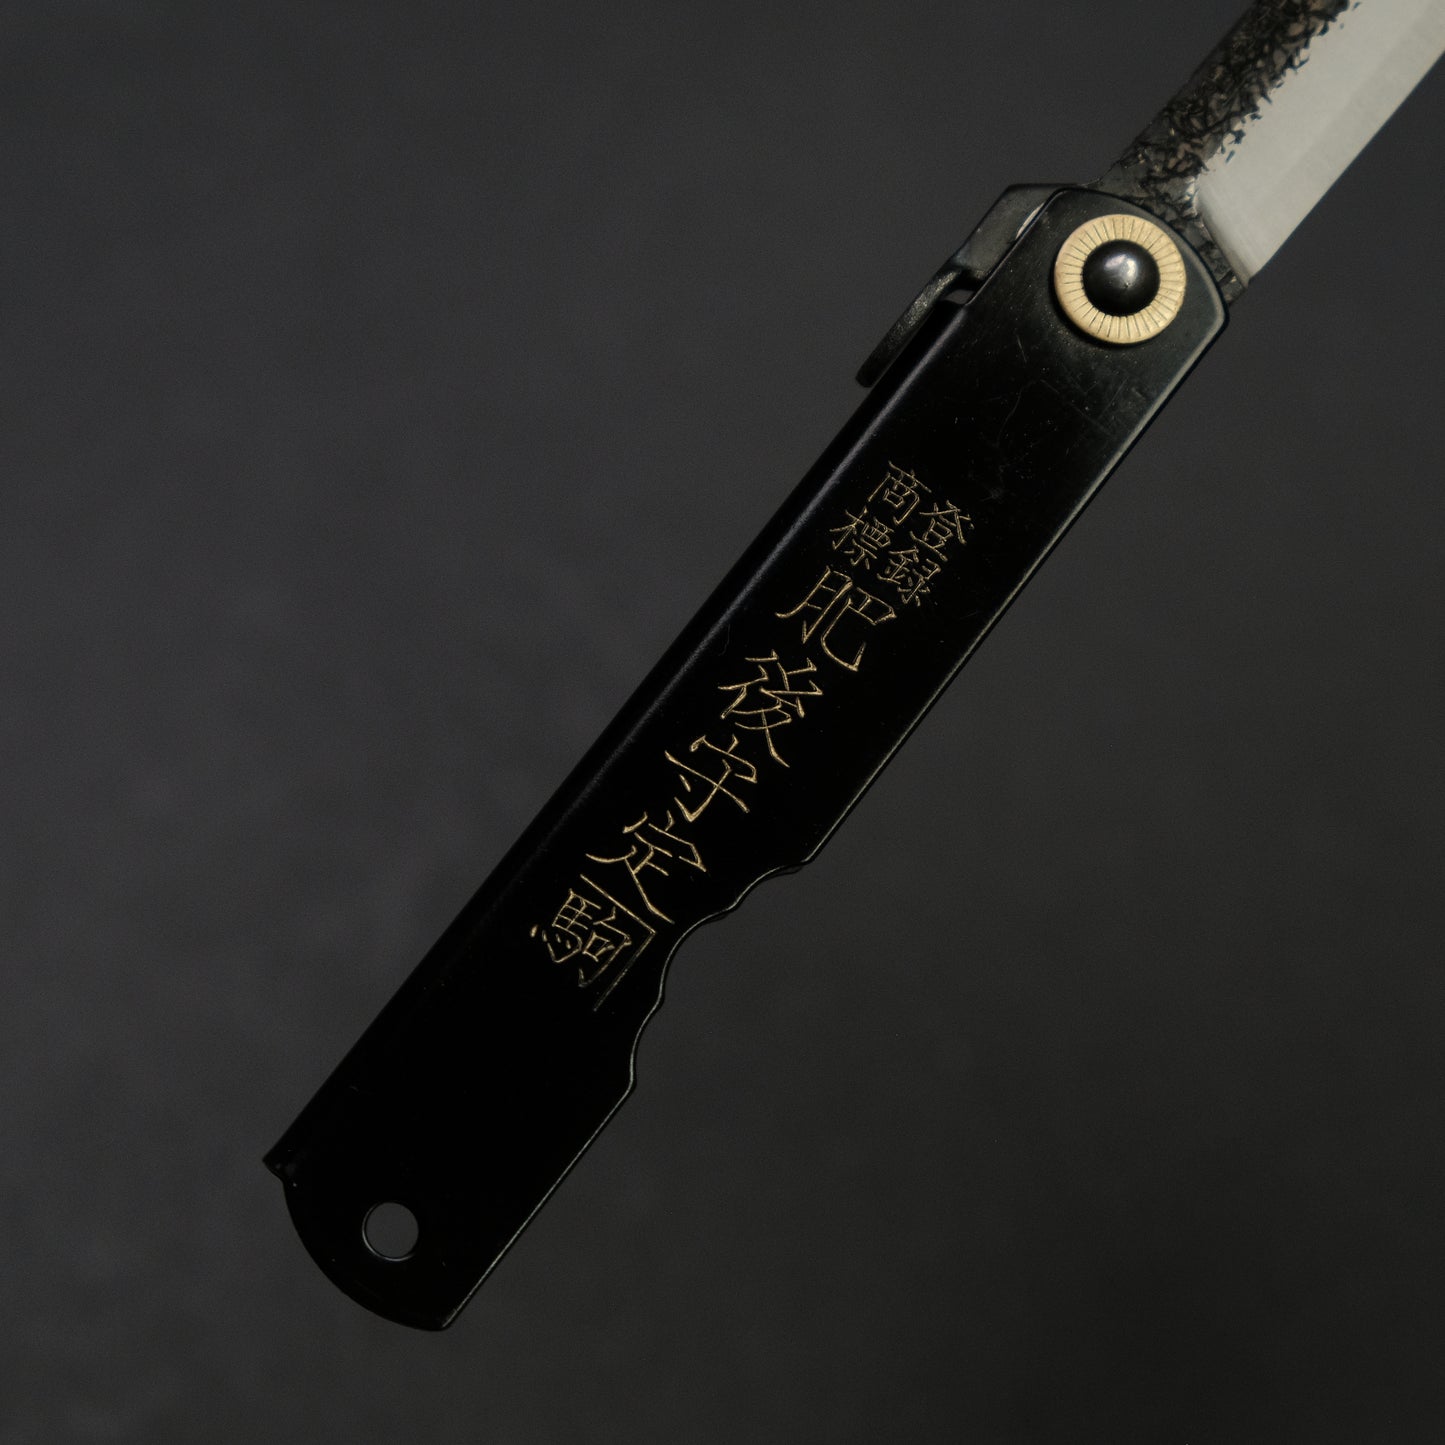 Higonokami Custom Folding Knife Large Brass Handle (#11K)